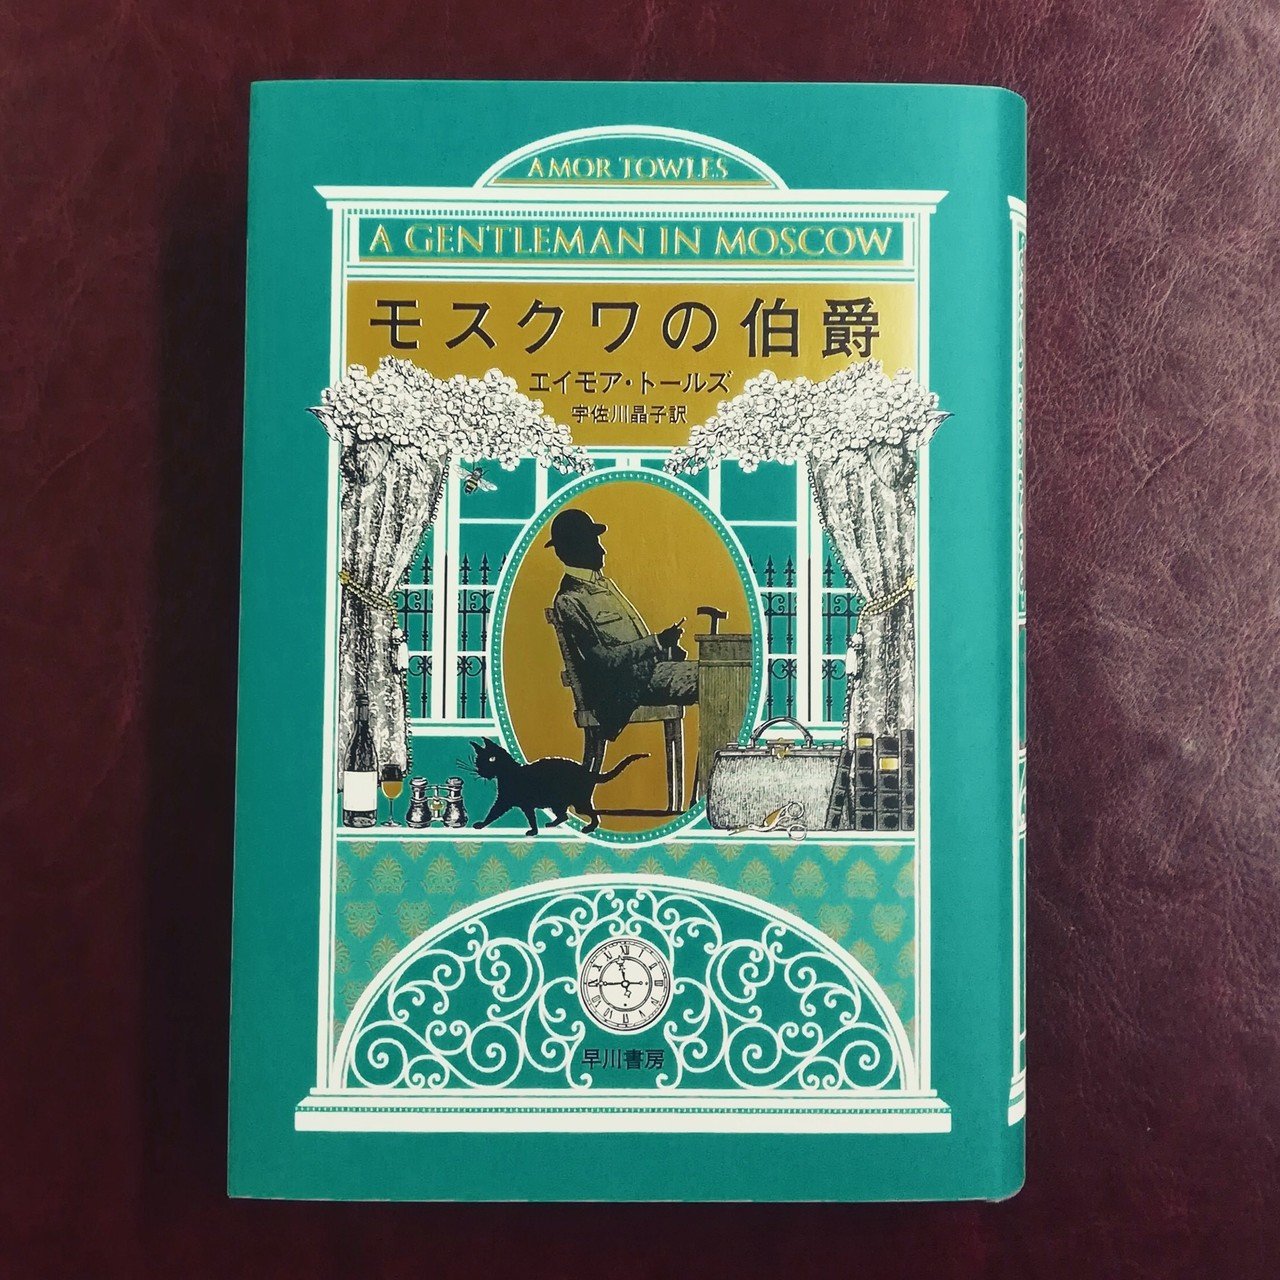 140万部突破 超高級ホテルに軟禁された貴族の優雅な生活を描く小説 モスクワの伯爵 エイモア トールズ Hayakawa Books Magazines B